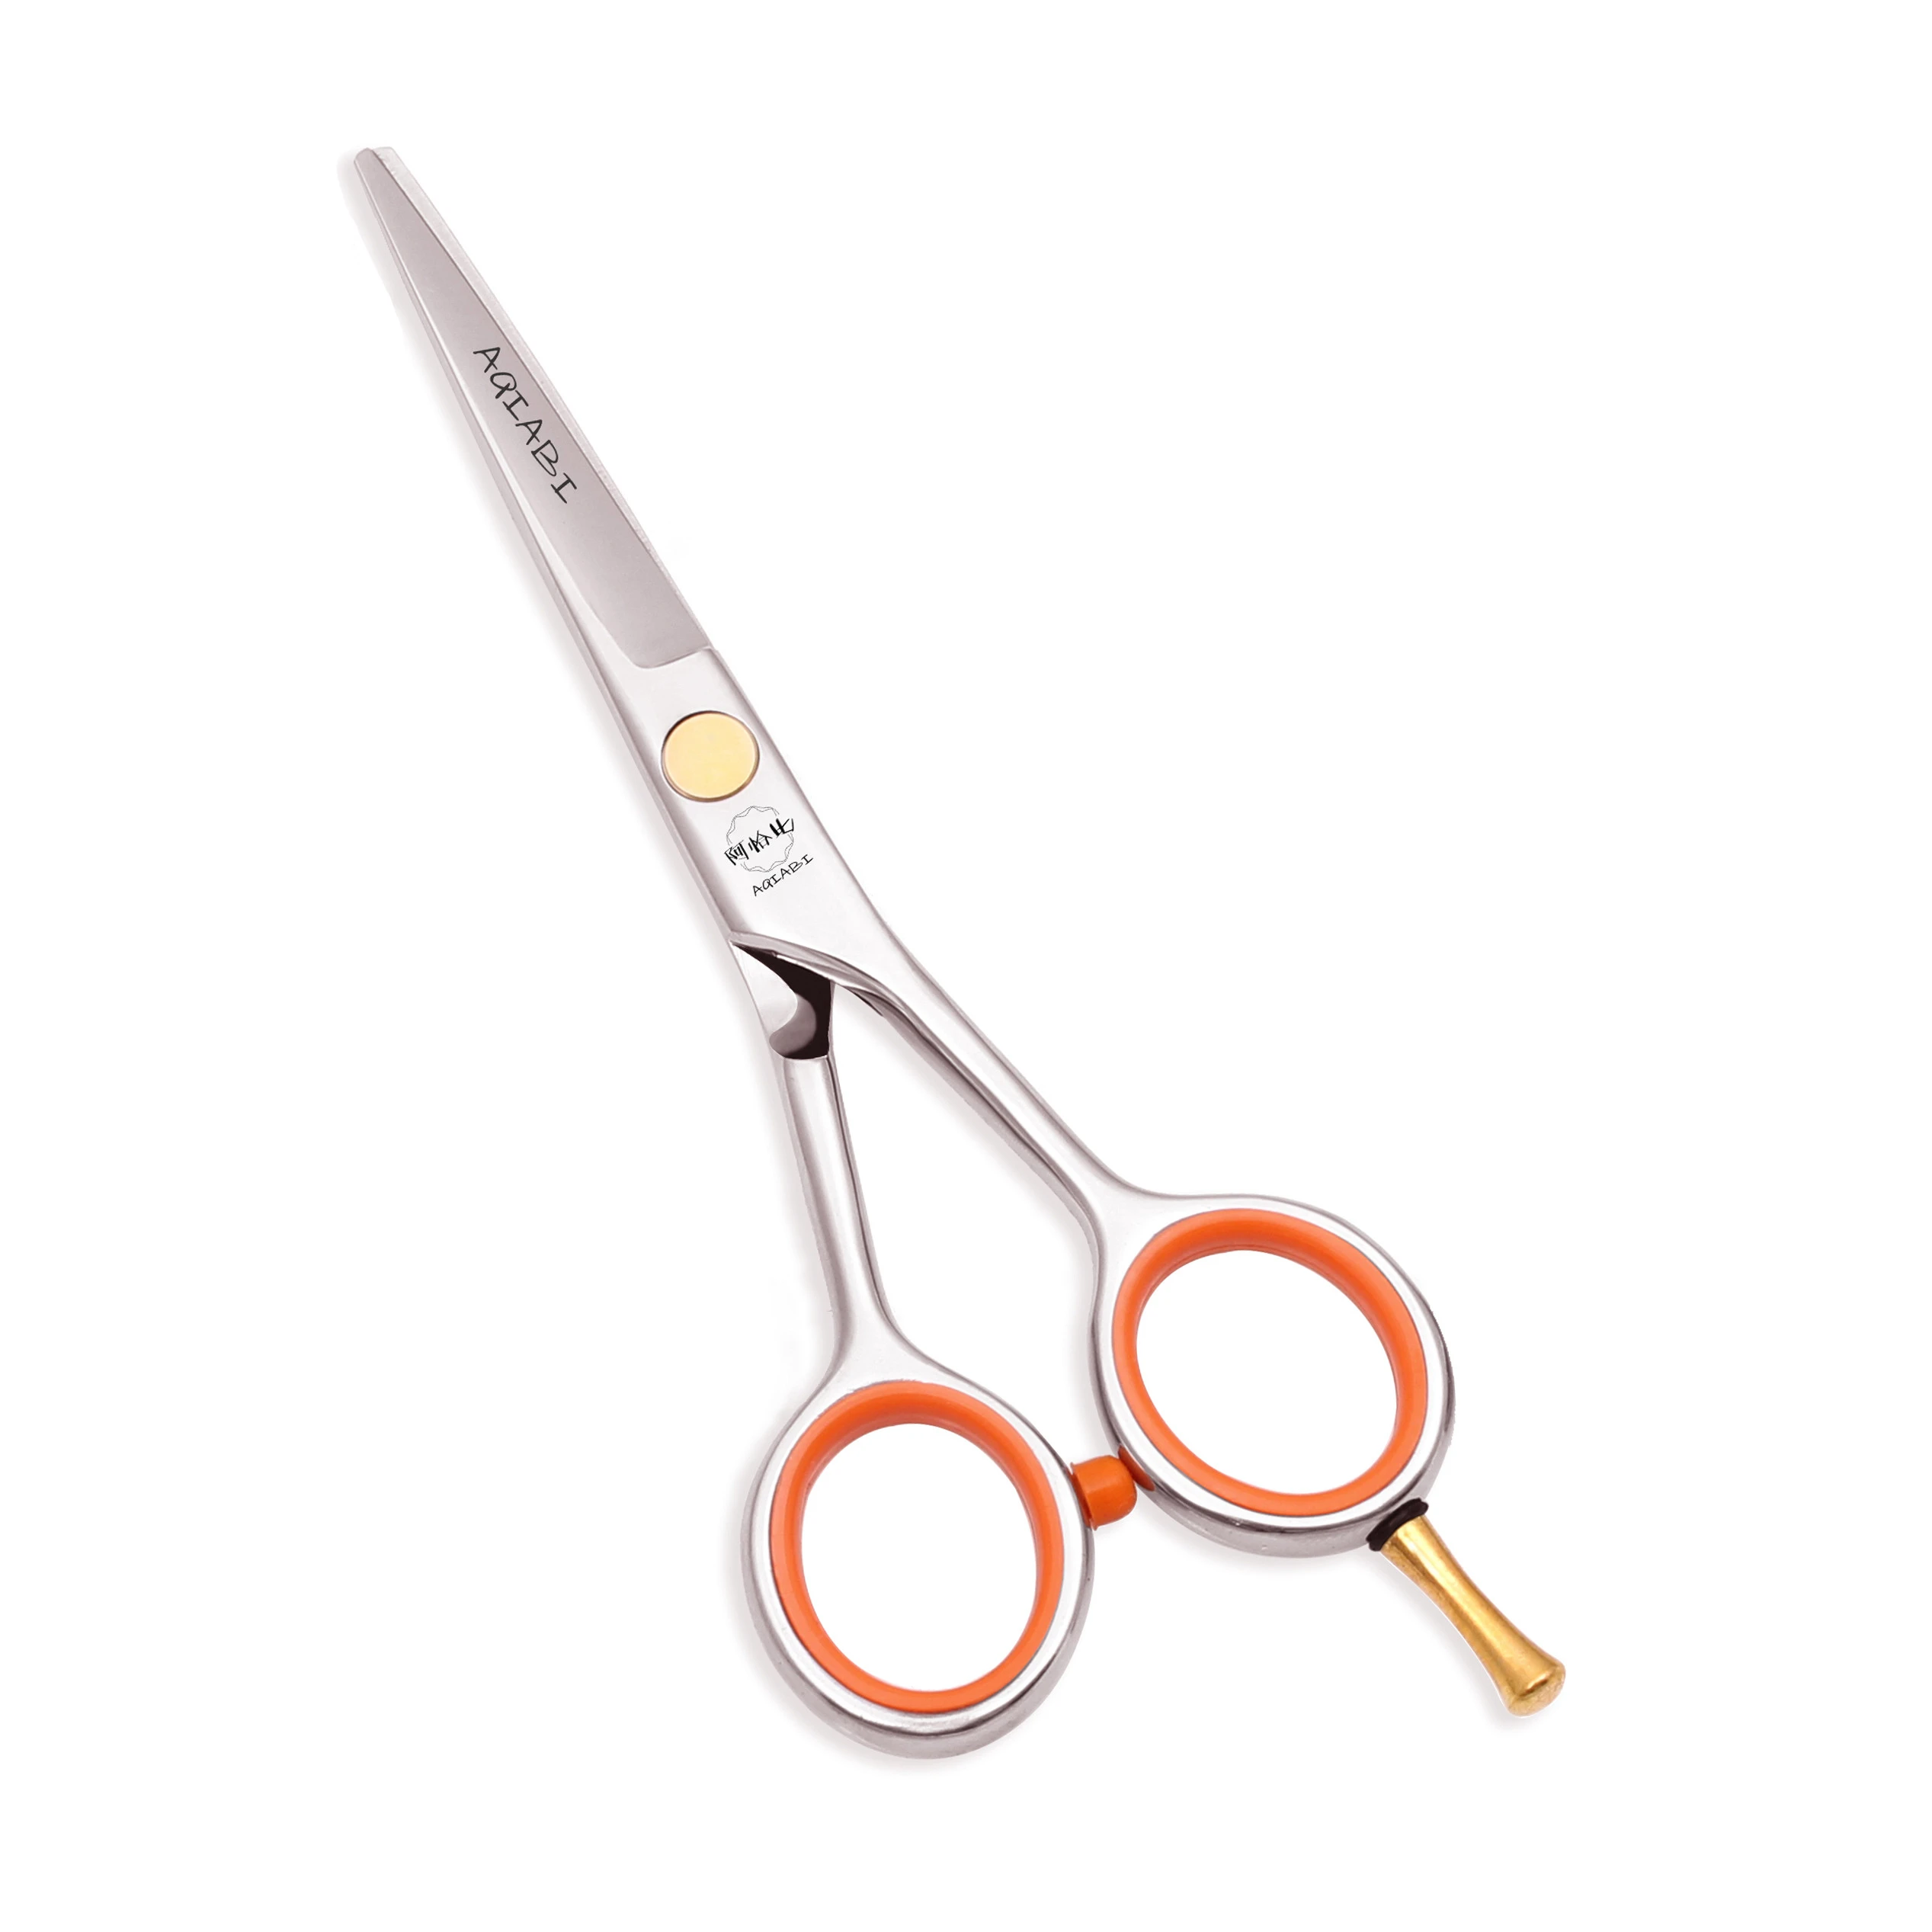 Hair Scissors Add Bag 4 5" 5.5" AQIABI Stainless Hair Cutting Scissors Thinning Scissors Haircut Set Finger Rest A1017